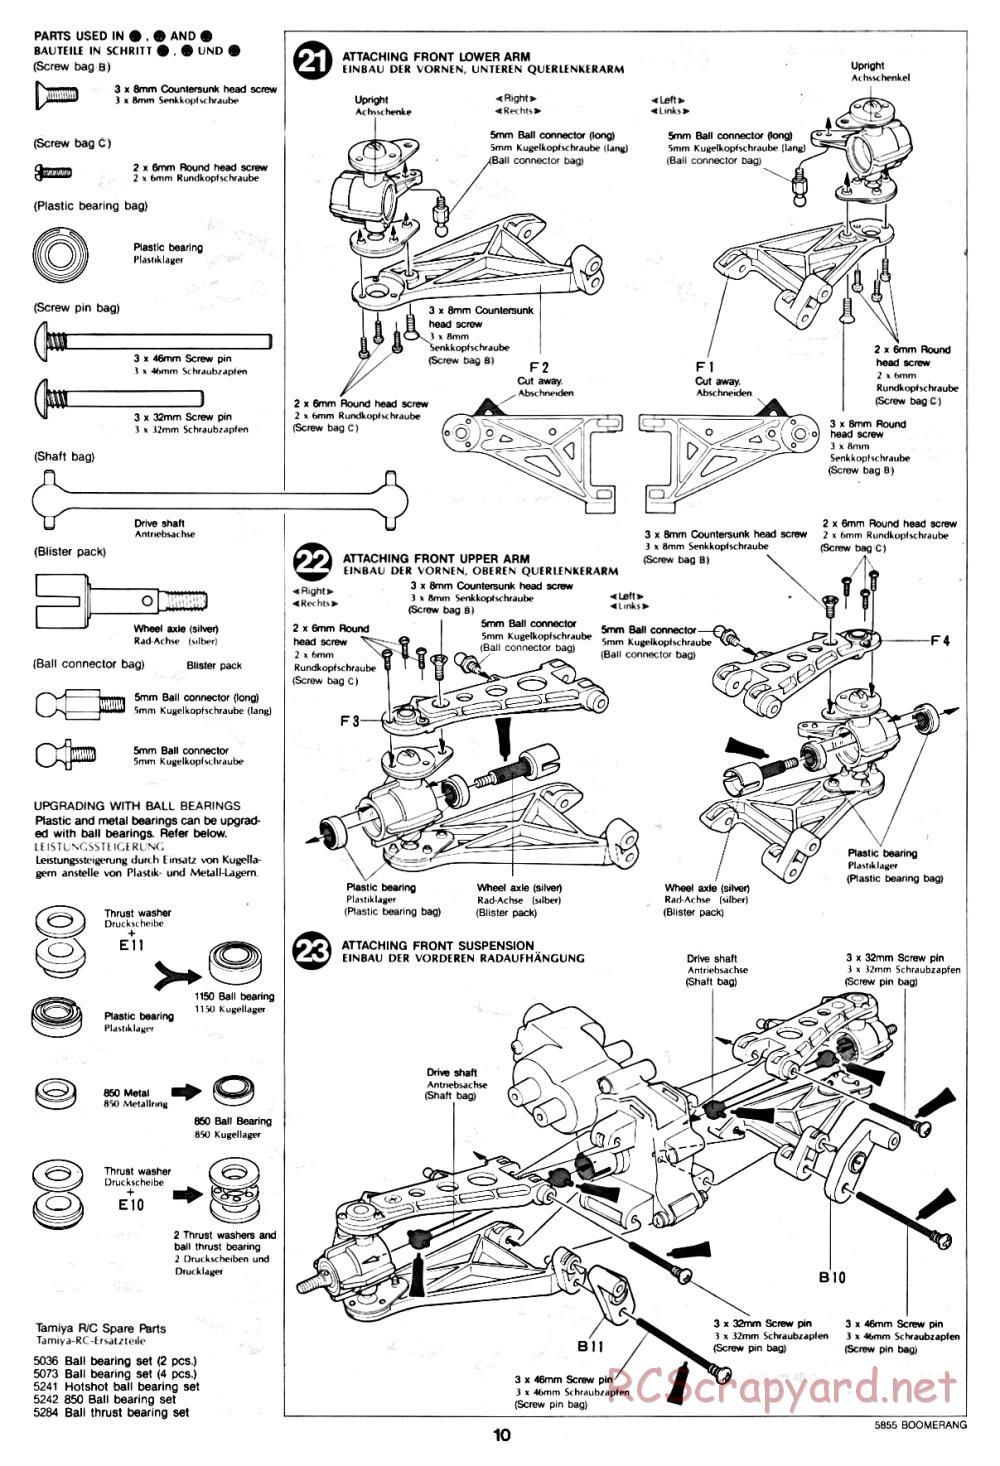 Tamiya - The Boomerang - 58055 - Manual - Page 10